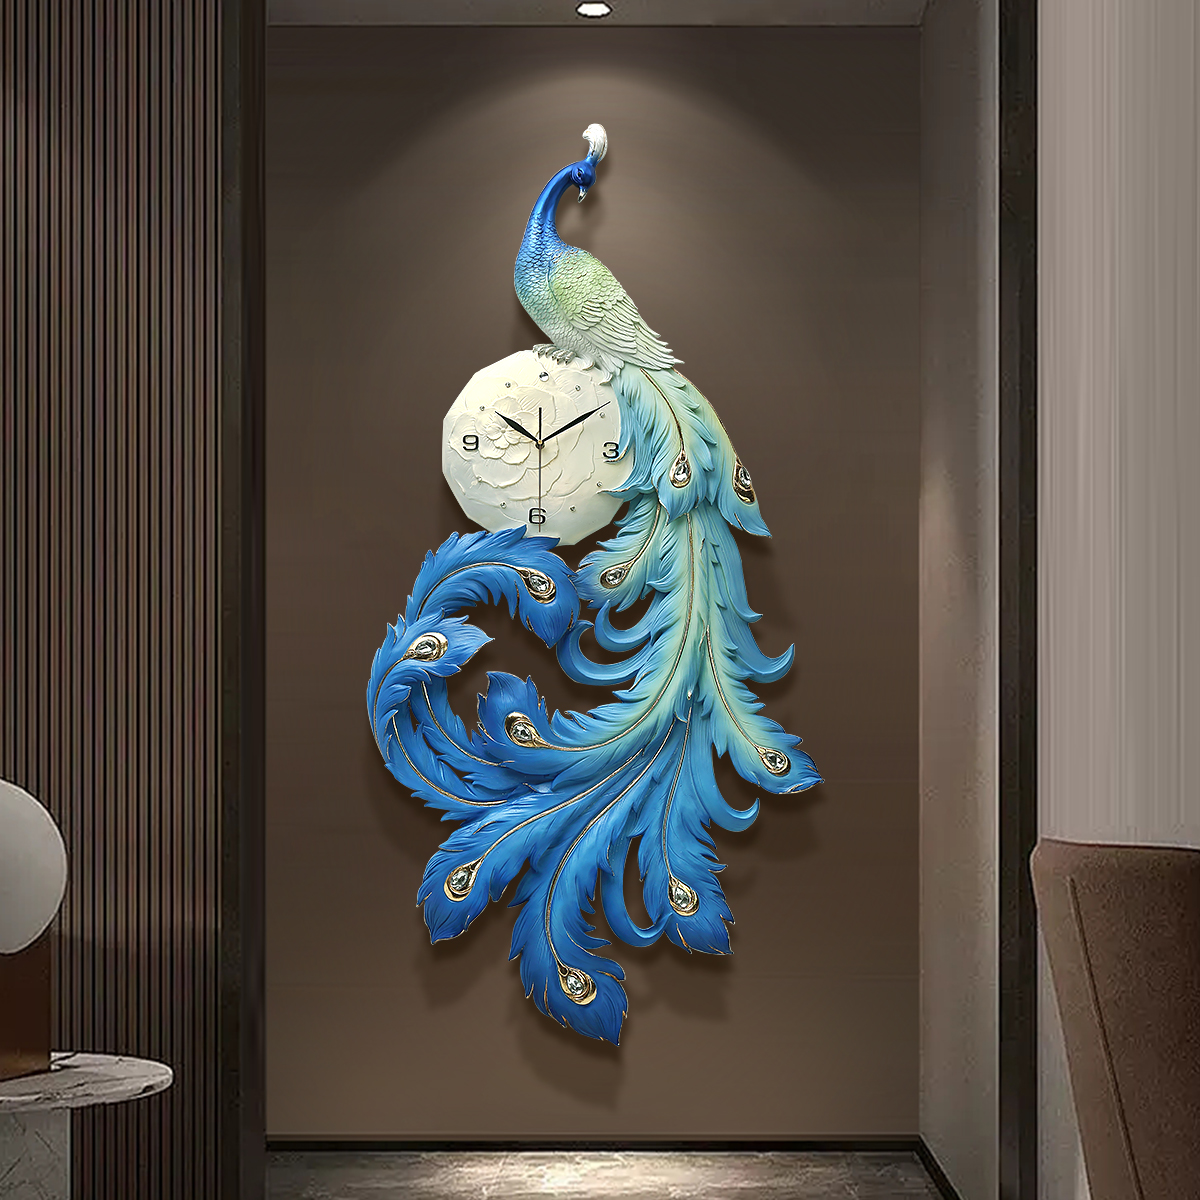 浮雕孔雀挂钟客厅钟表中式个性艺术轻奢家用餐厅时尚创意挂表时钟